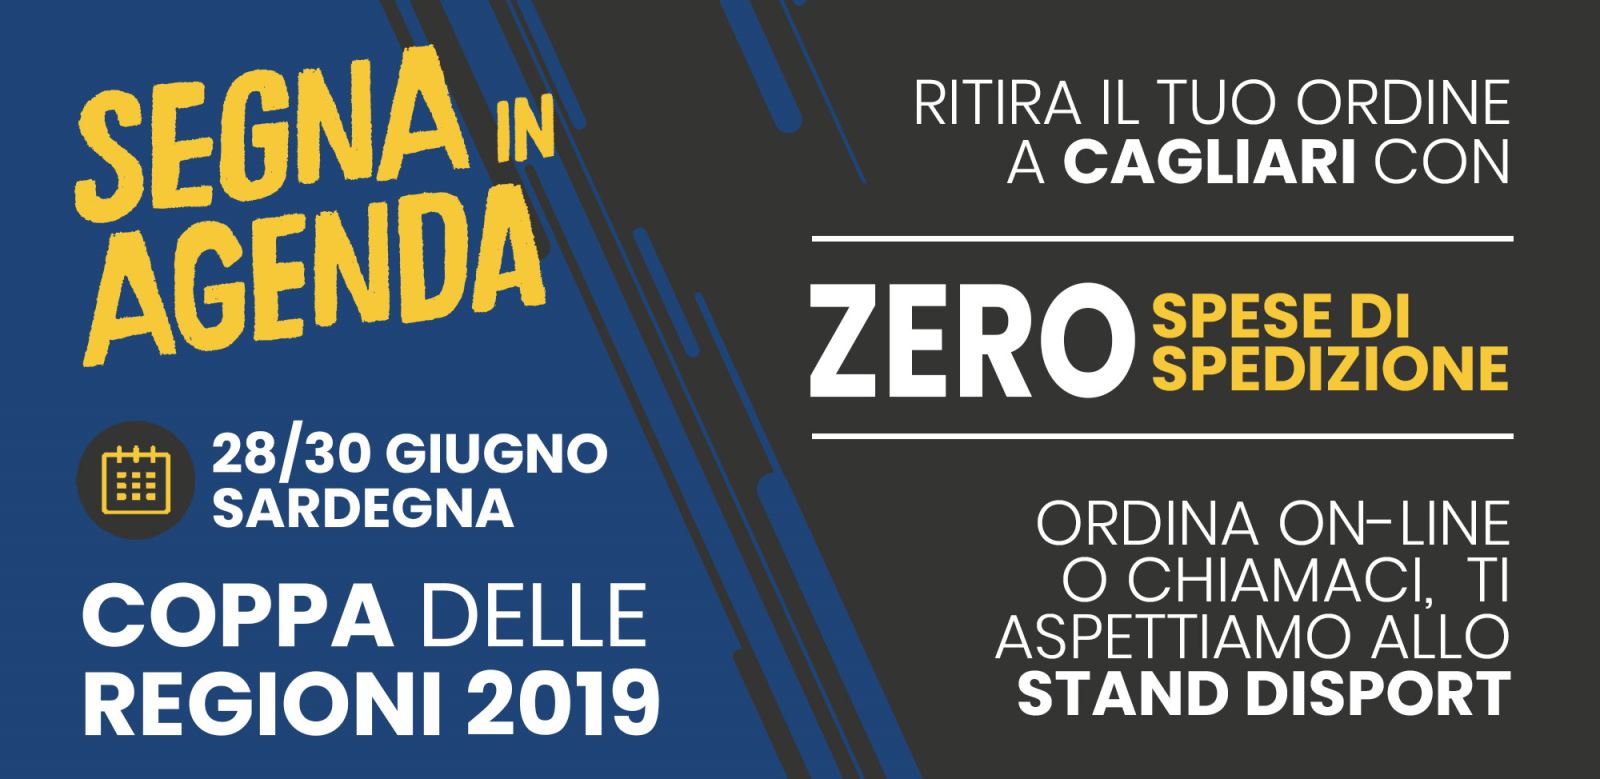 Siamo presenti alla Coppa Italia Delle Regioni 2019 Cagliari